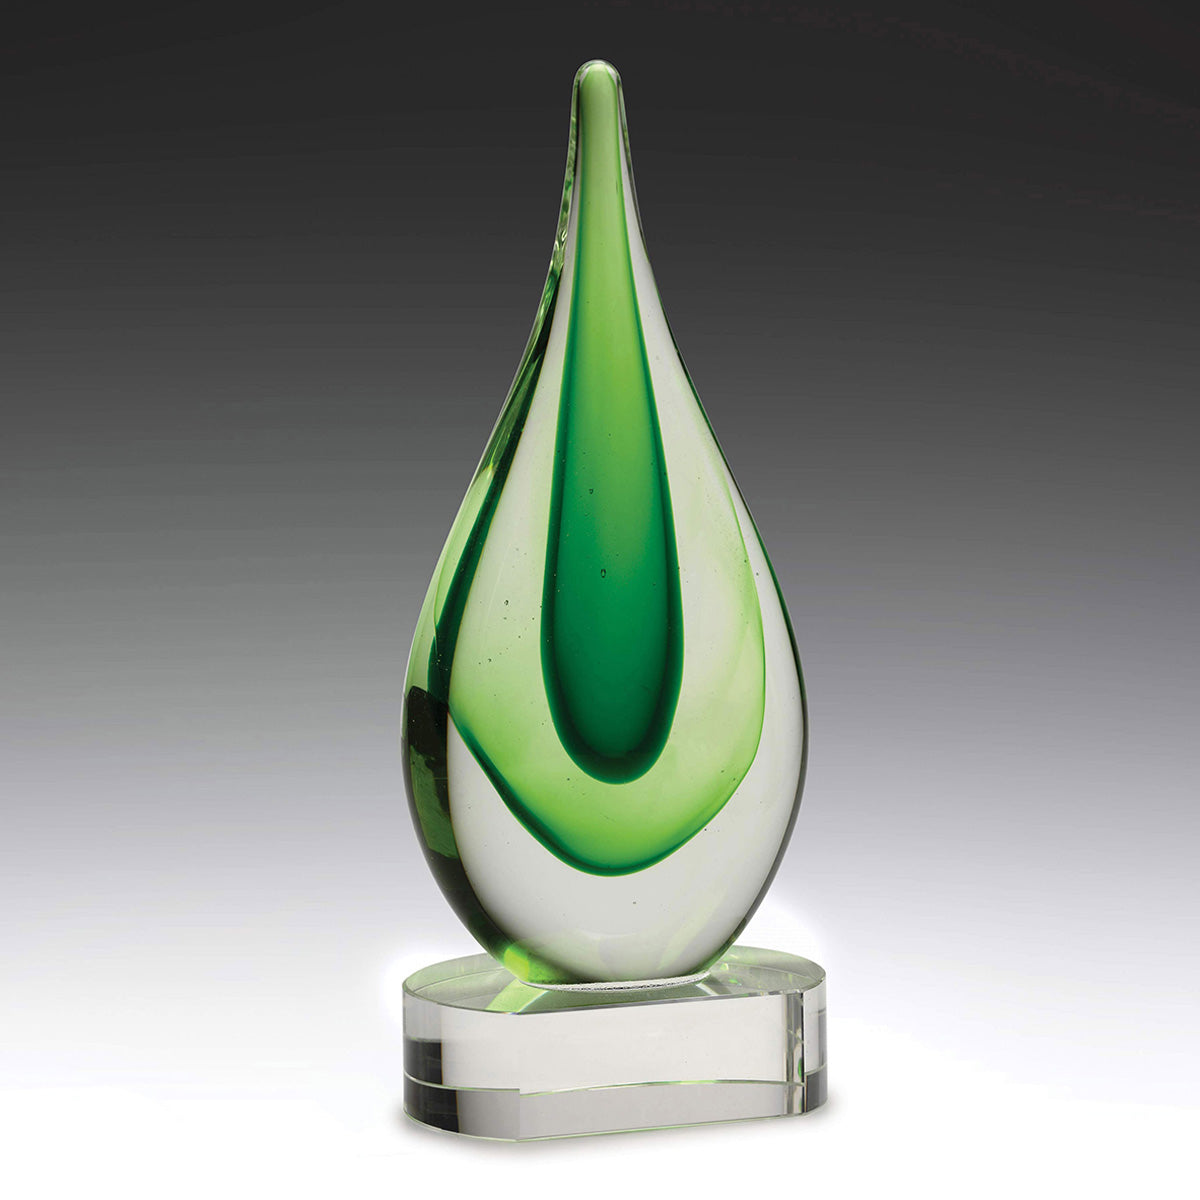 Art Glass Award - Earth